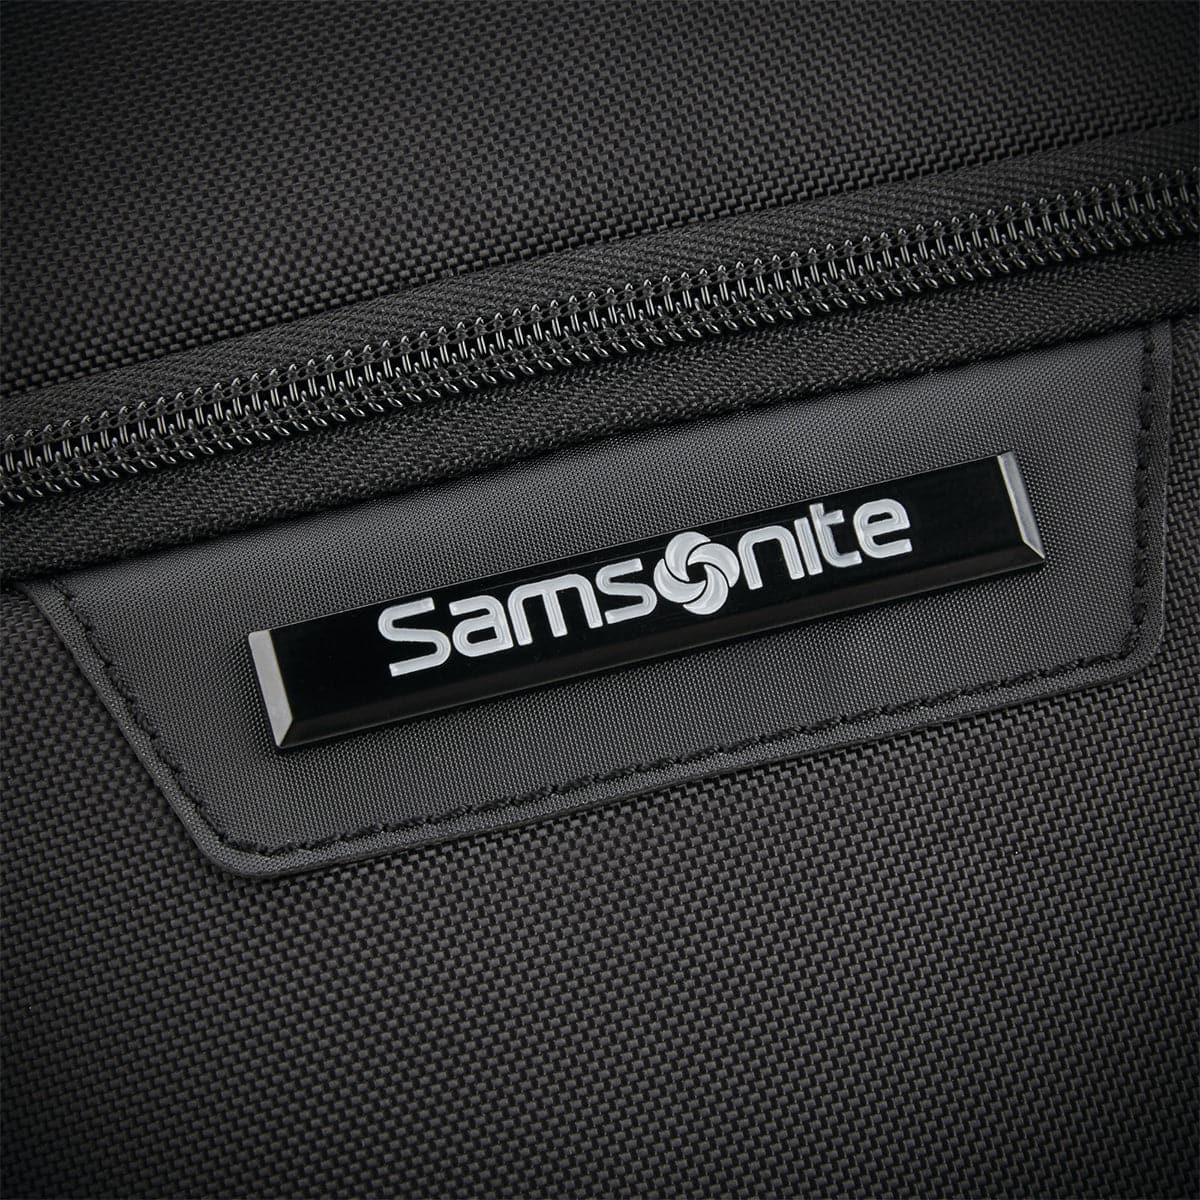 Samsonite Classic 2 Briefcase